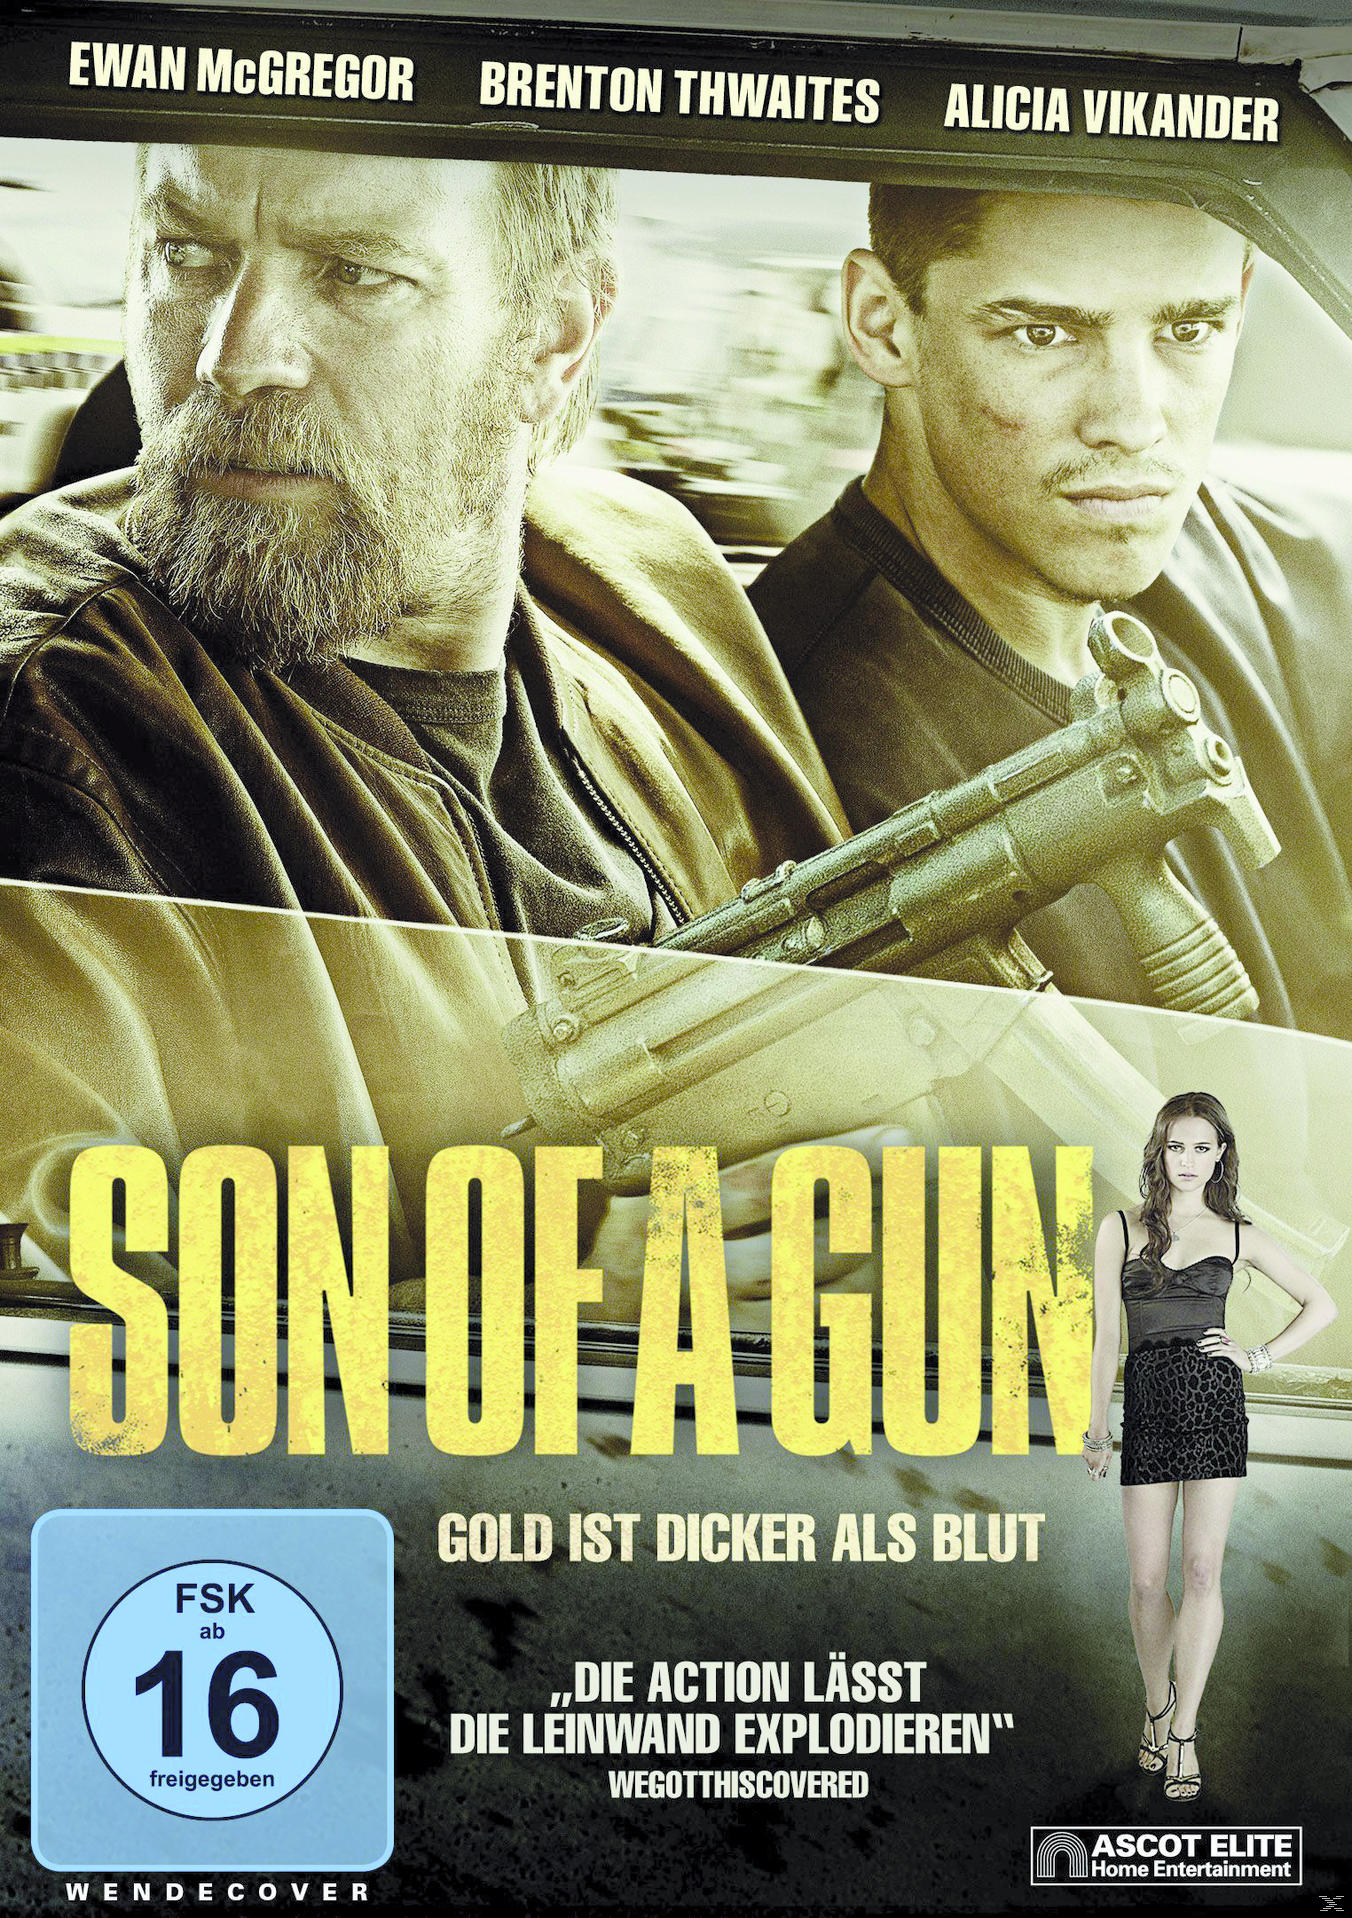 a DVD Son of Gun